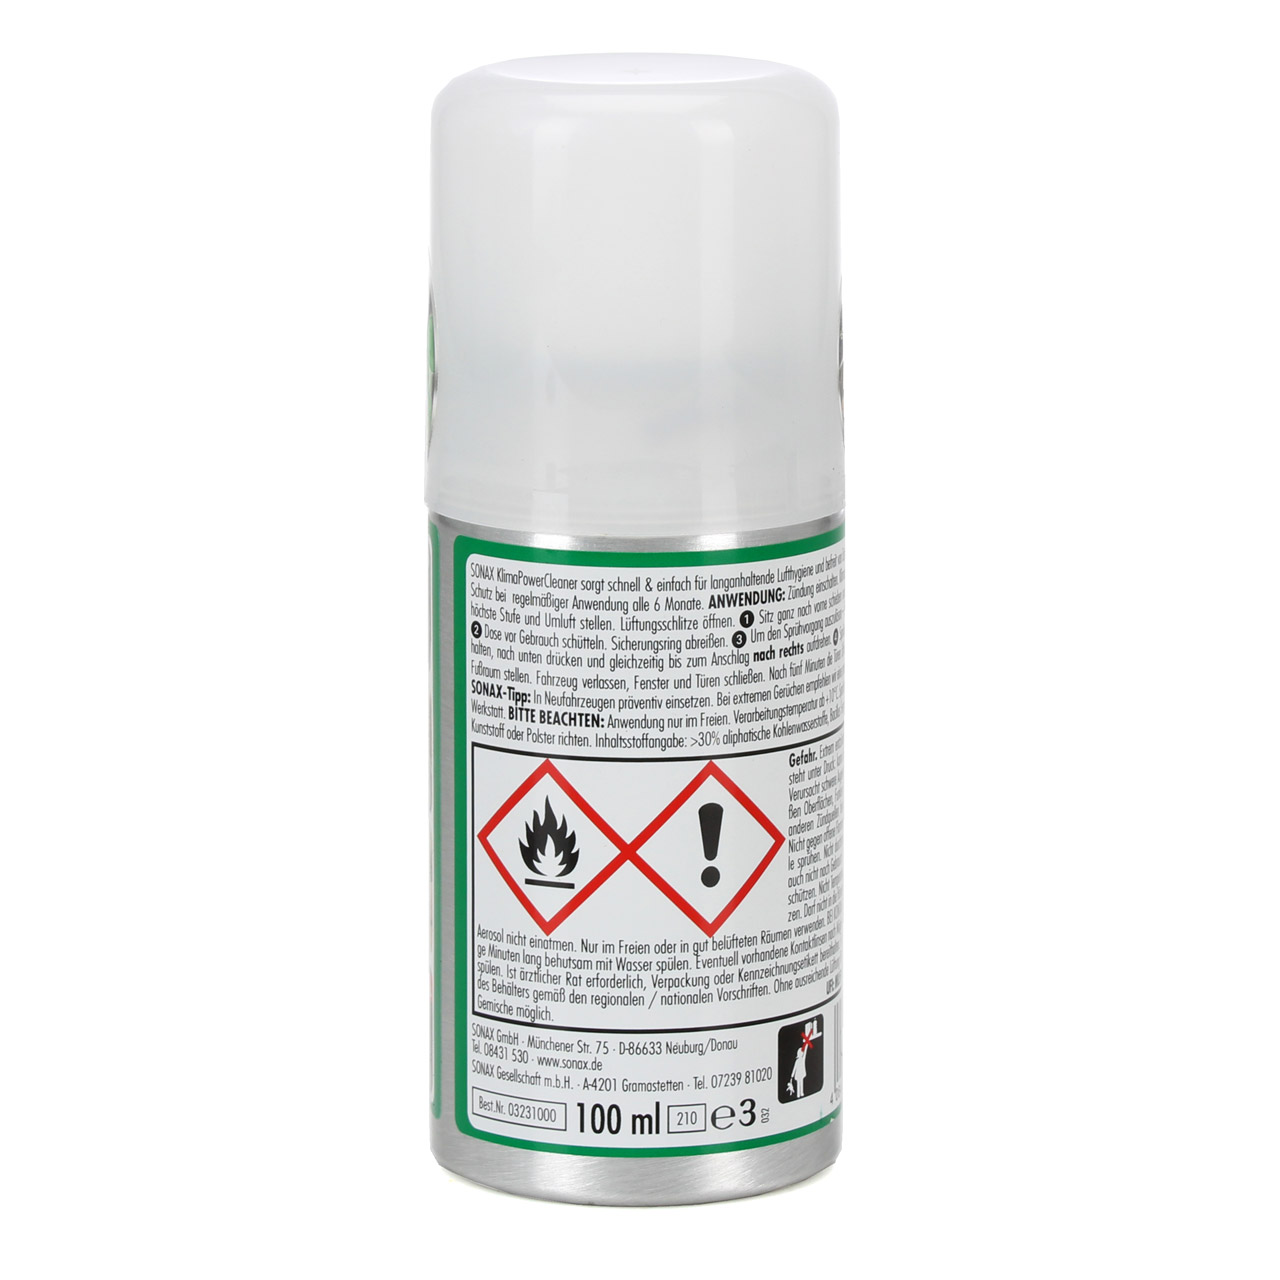 SONAX SmokeEx Geruchskiller & Frische-Spray Geruchsentferner 500ml 292241 